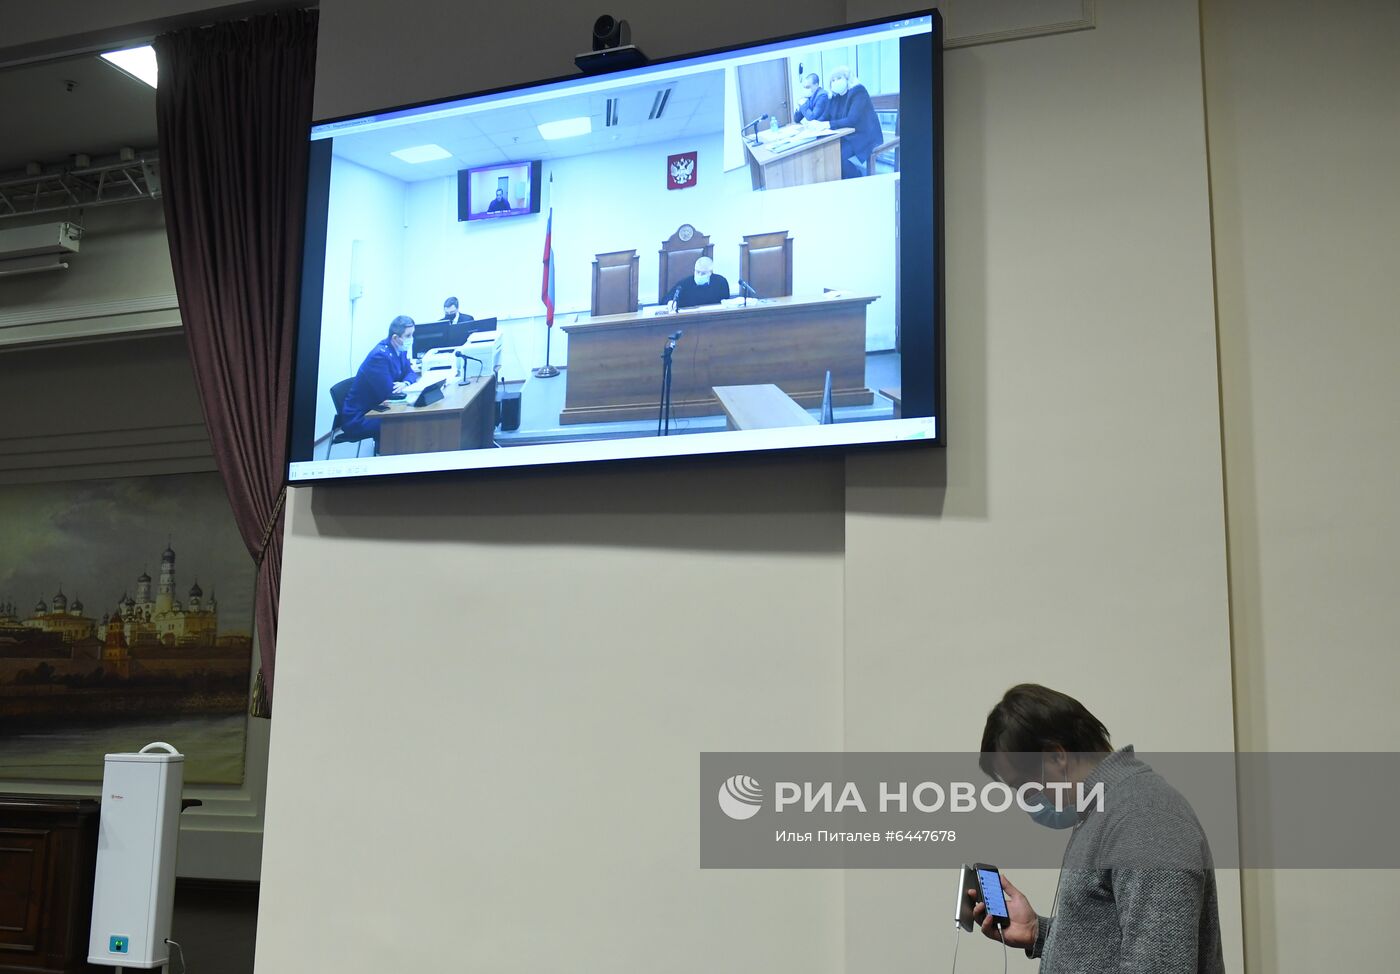 Рассмотрение жалобы на арест А. Навального